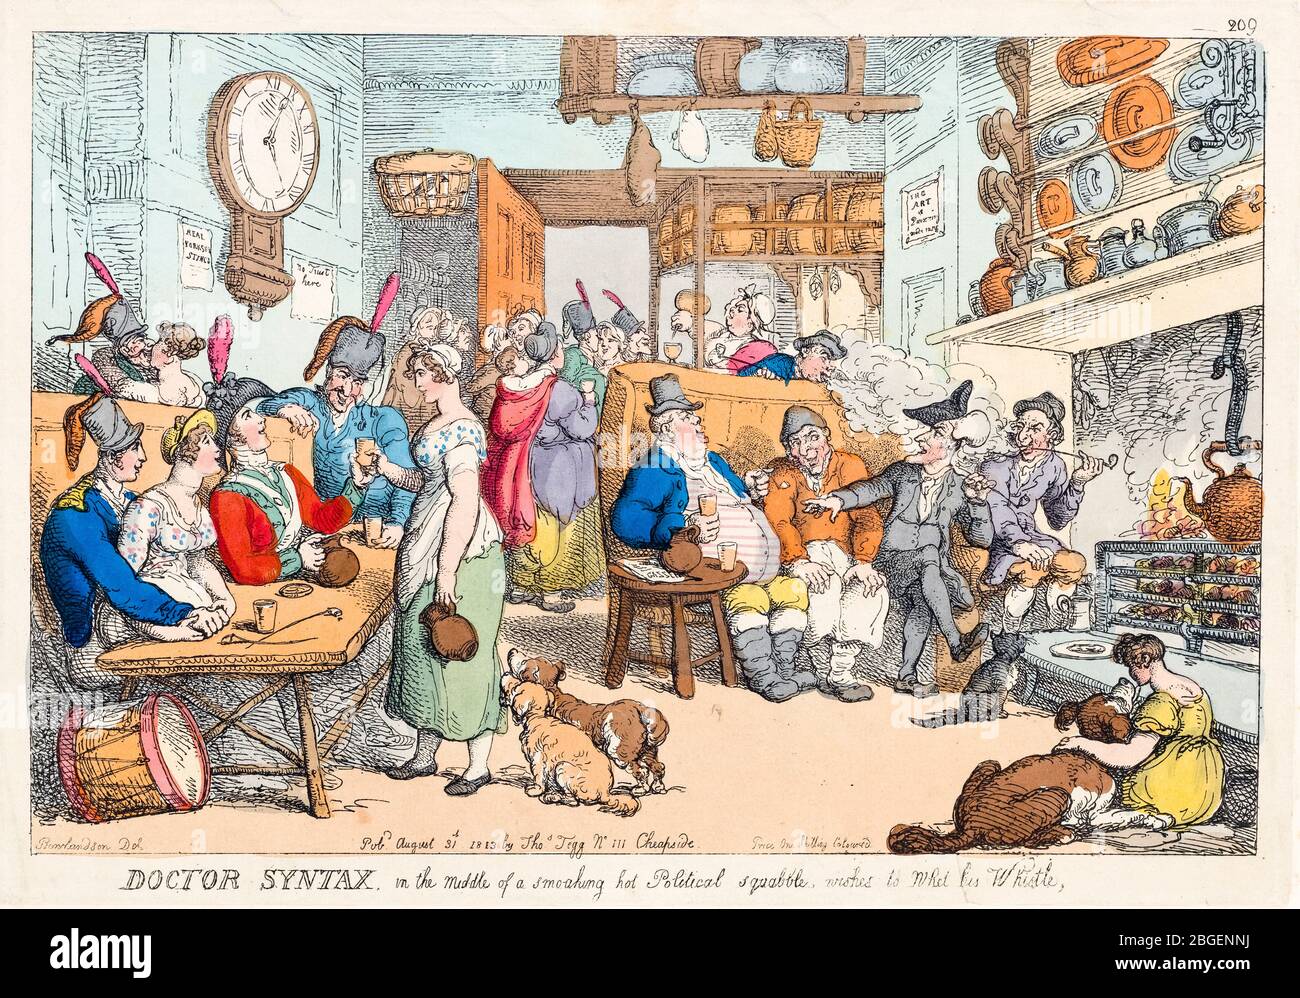 Doctor Syntax in the Middle of a Smoking Hot politische Streitsummel, will seine Pfeife wweet, Radierung von Thomas Rowlandson, 1813 Stockfoto